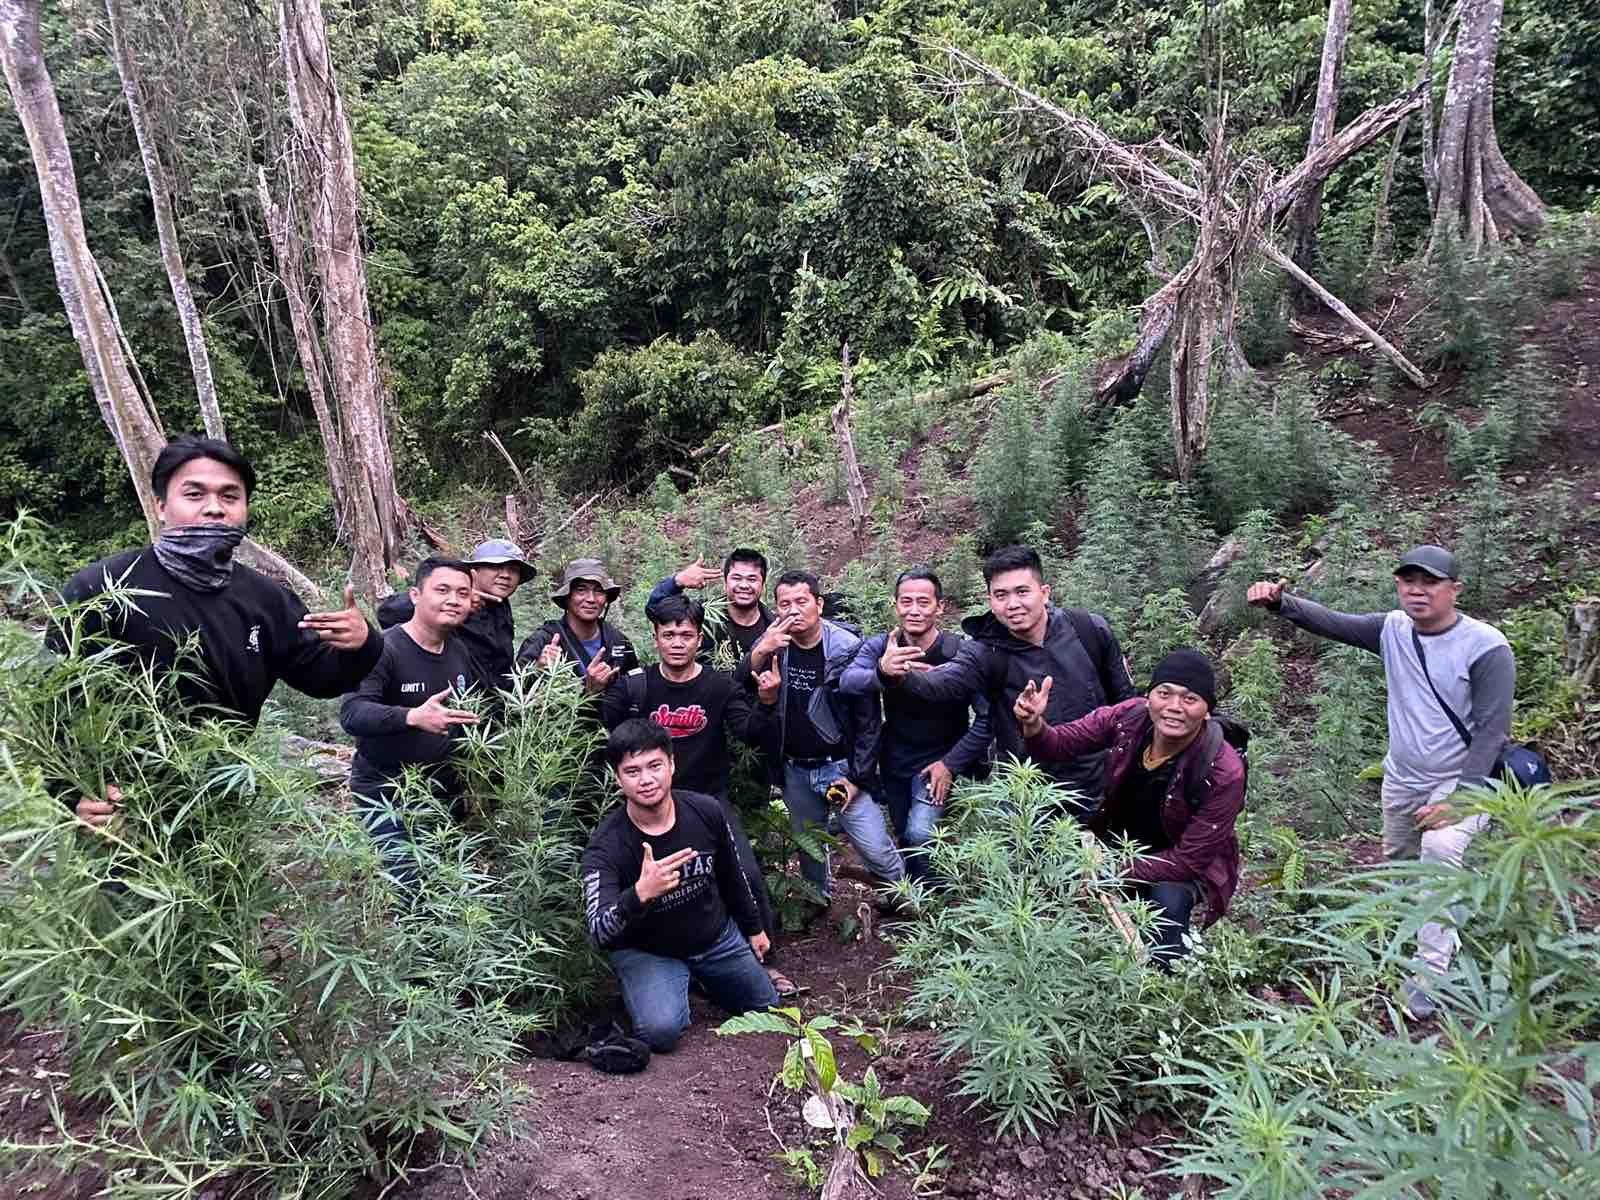 Polres Empat Lawang berhasil menemukan keberadaan ladang ganja di wilayah Talang Randai Desa Batu Jungul Kecamatan Muara Pinang, Kabupaten Empat Lawang